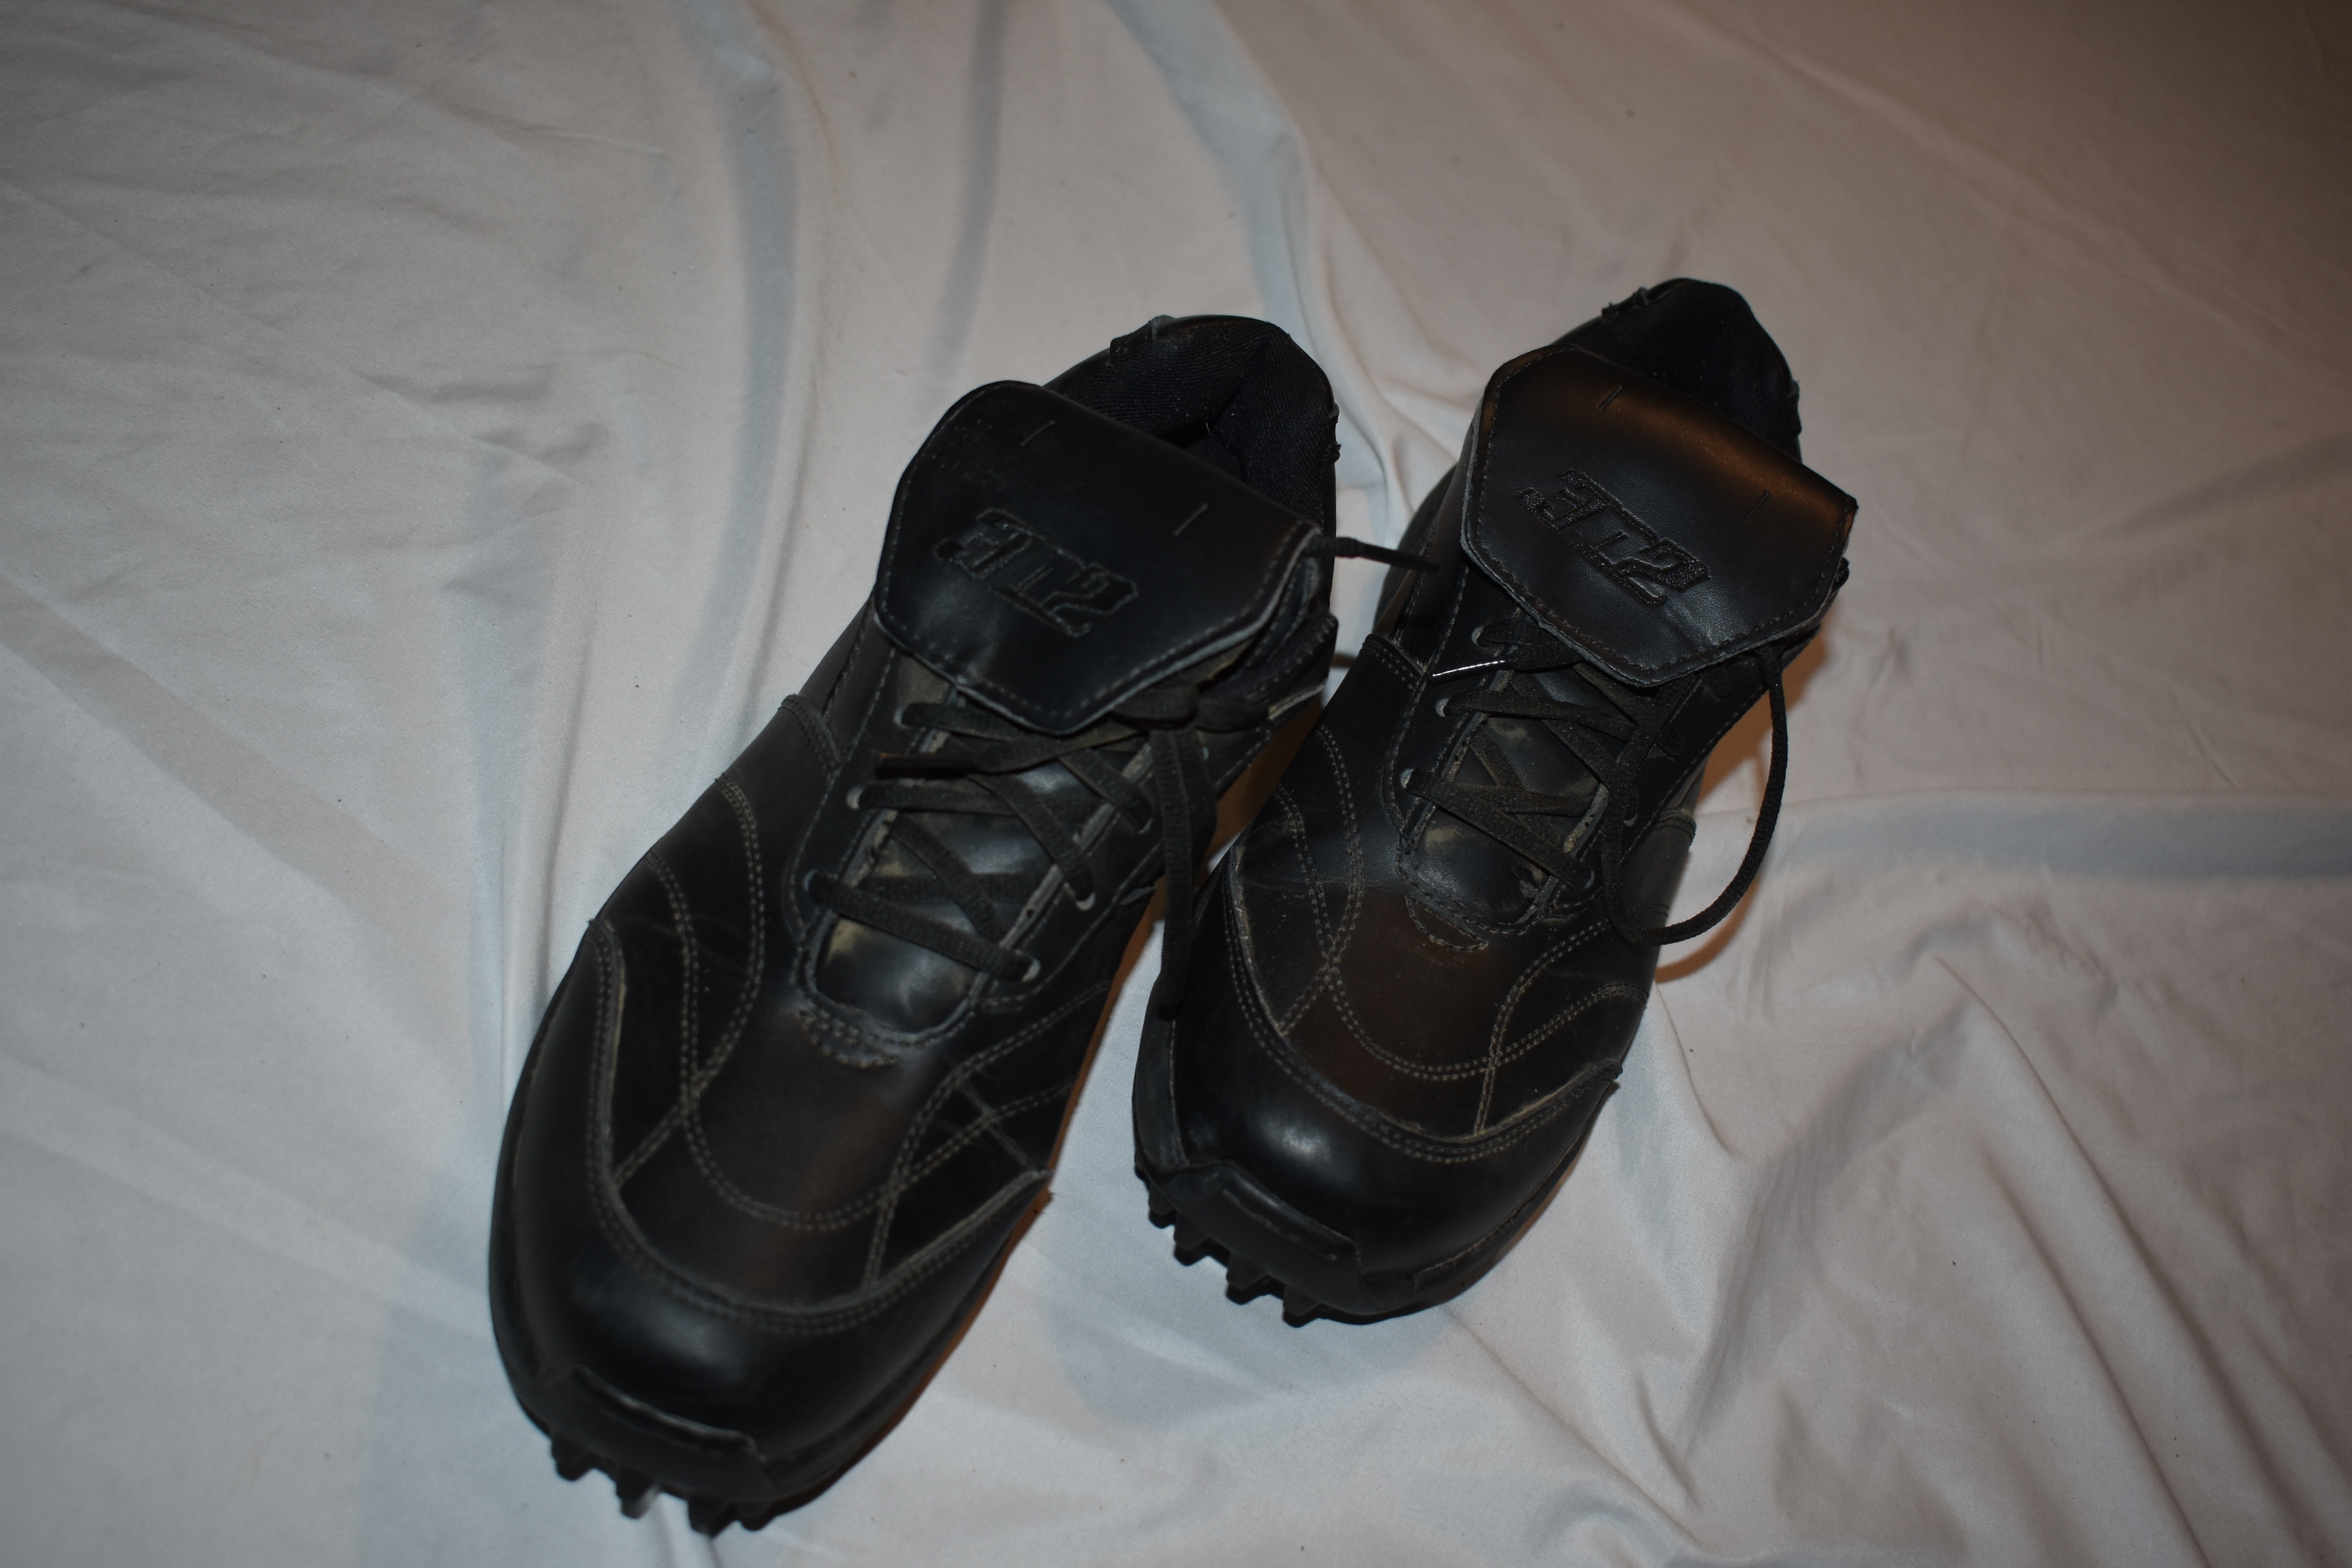 3N2 Baseball Rubber Sole Cleats, Black, Men's Size 11